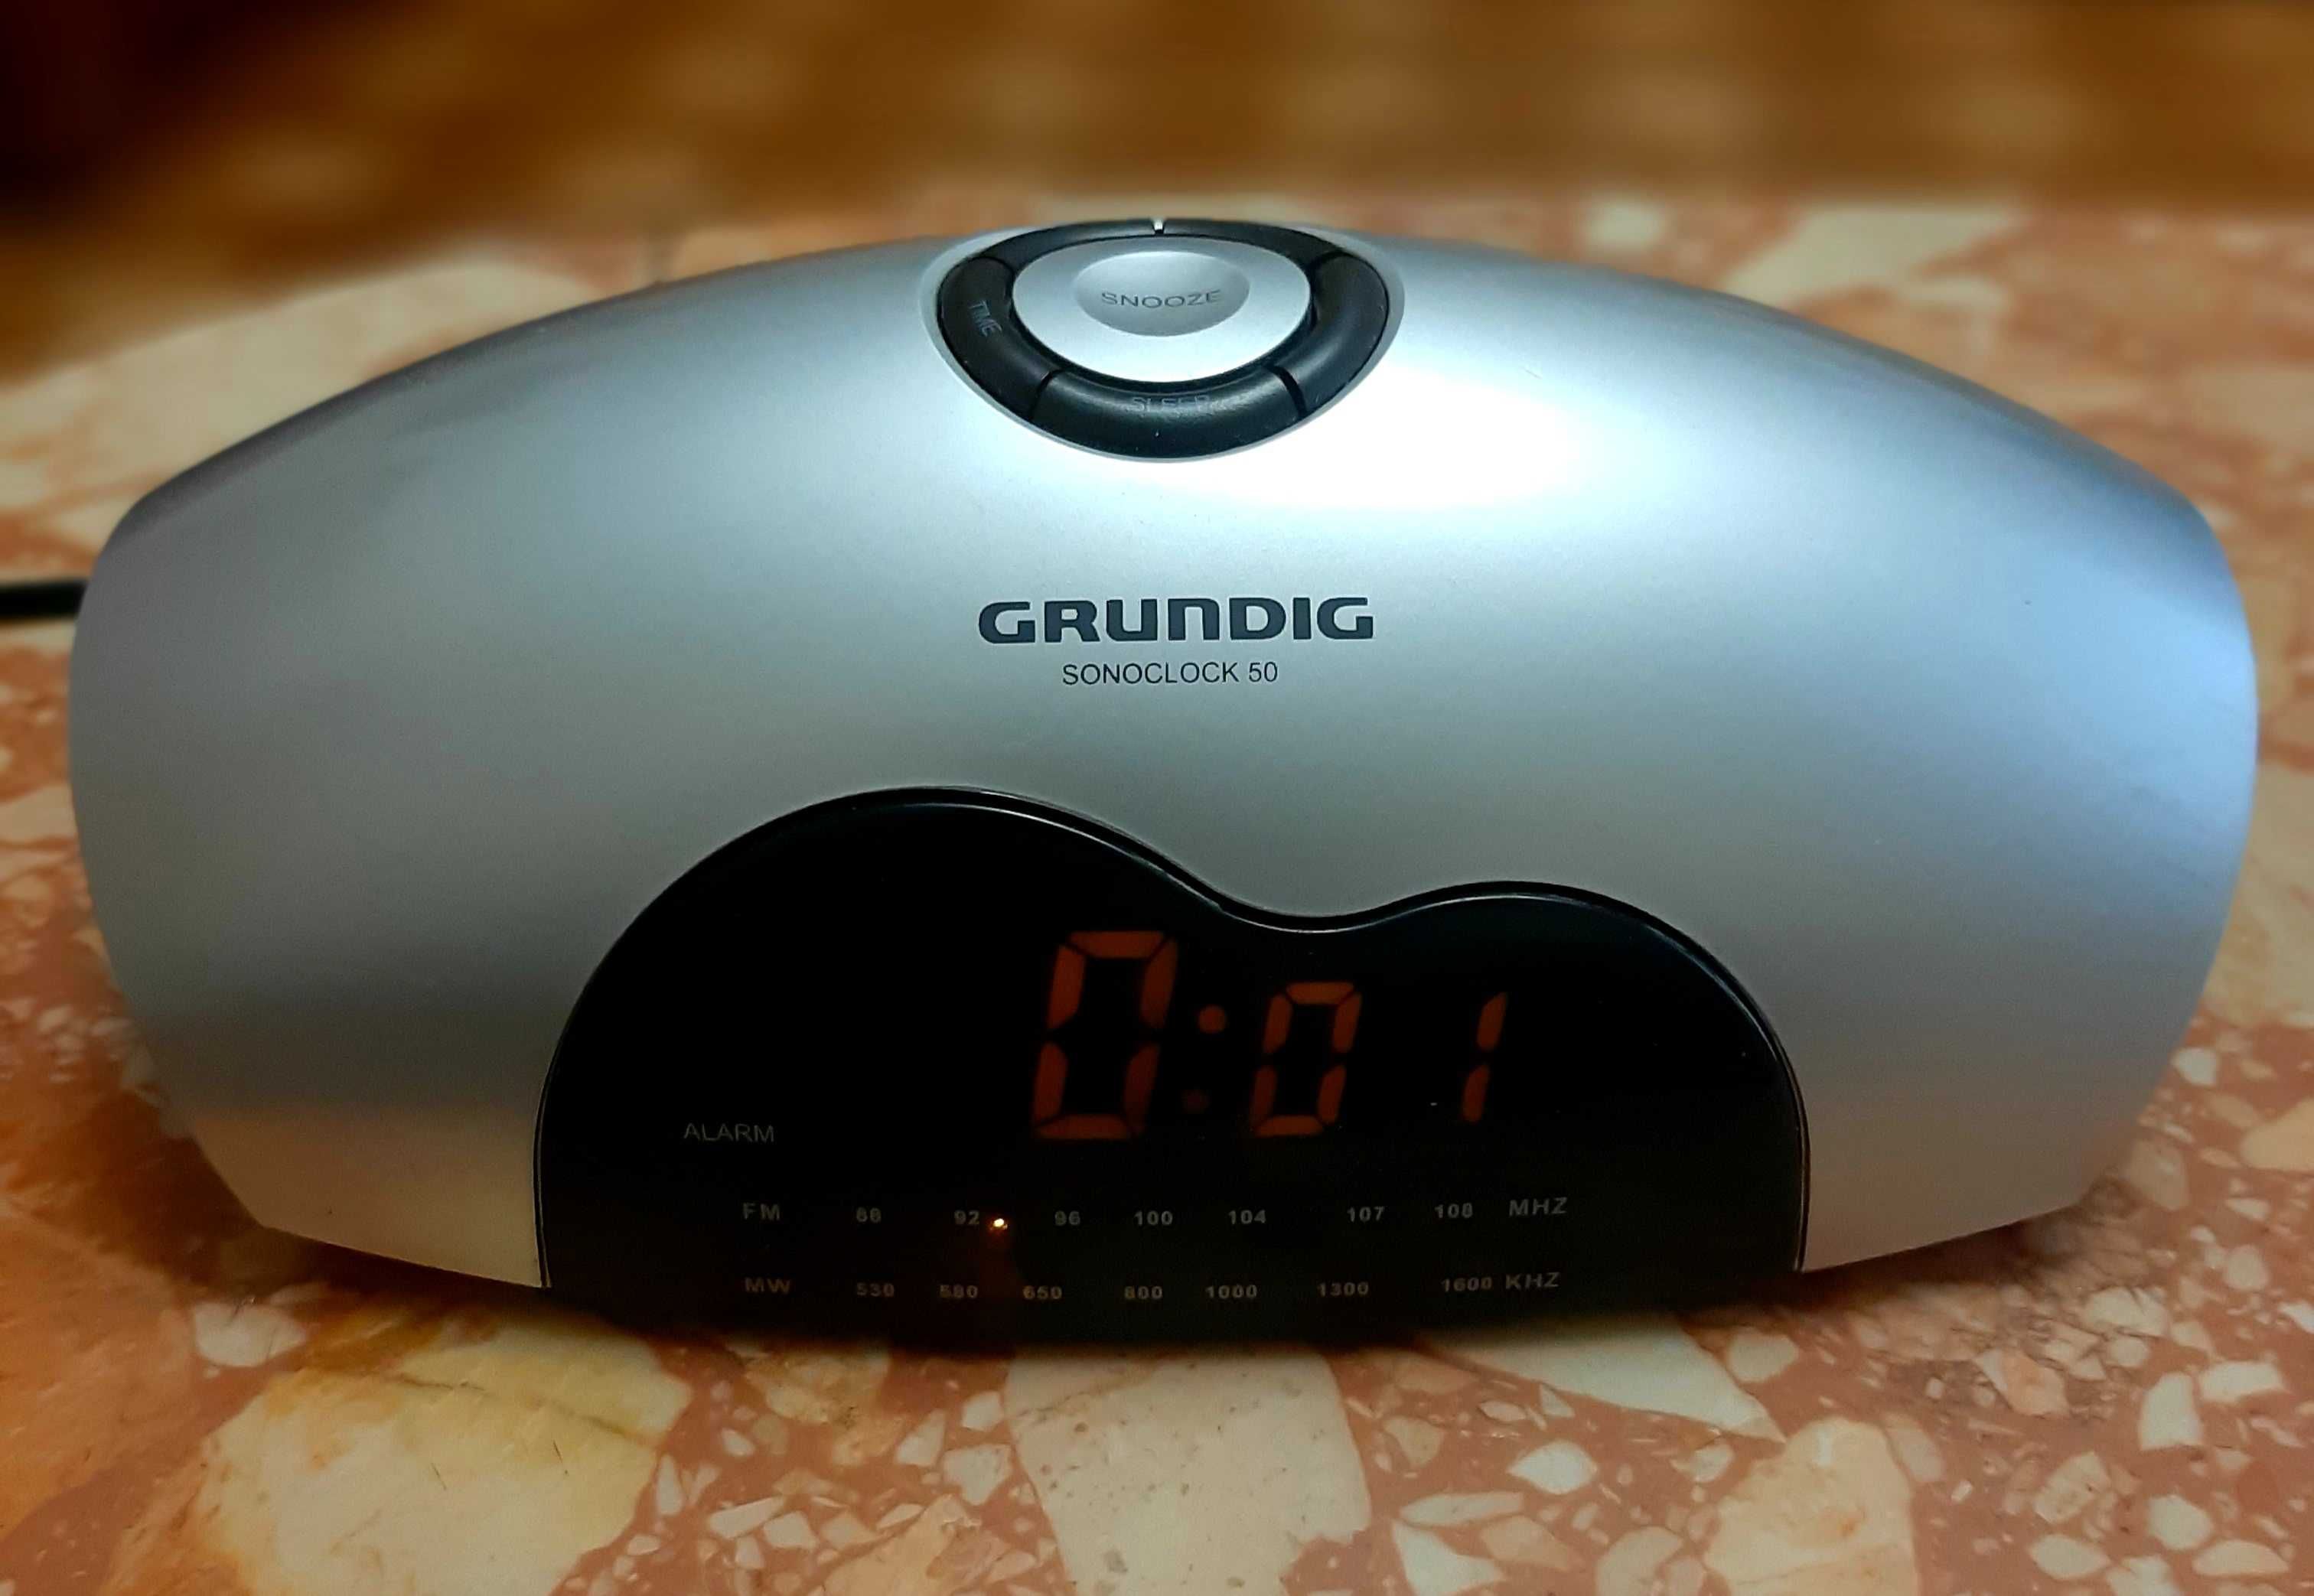 Радиоприемник - будильник GRUNDING. Производство Германия.